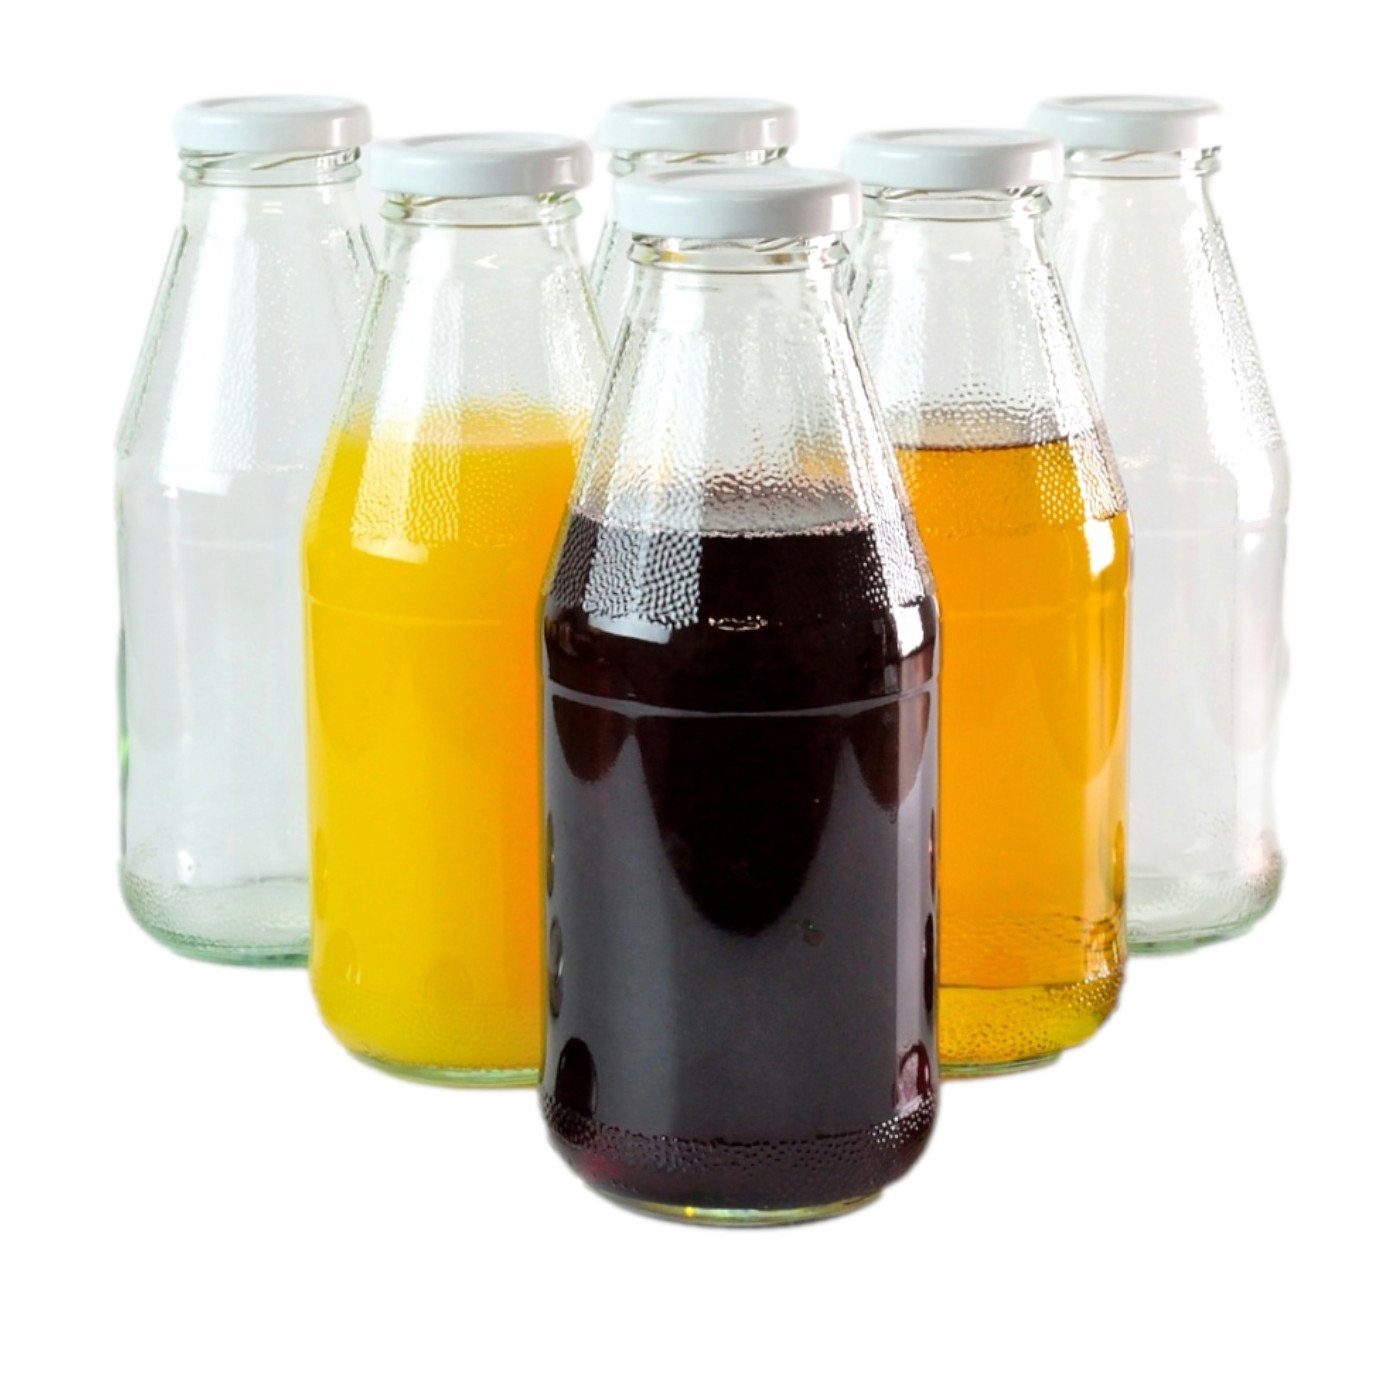 gouveo Trinkflasche Saftflaschen 500 ml mit Schraub-Deckel - Kleine Flasche 0,5 l, 6er Set, weiß